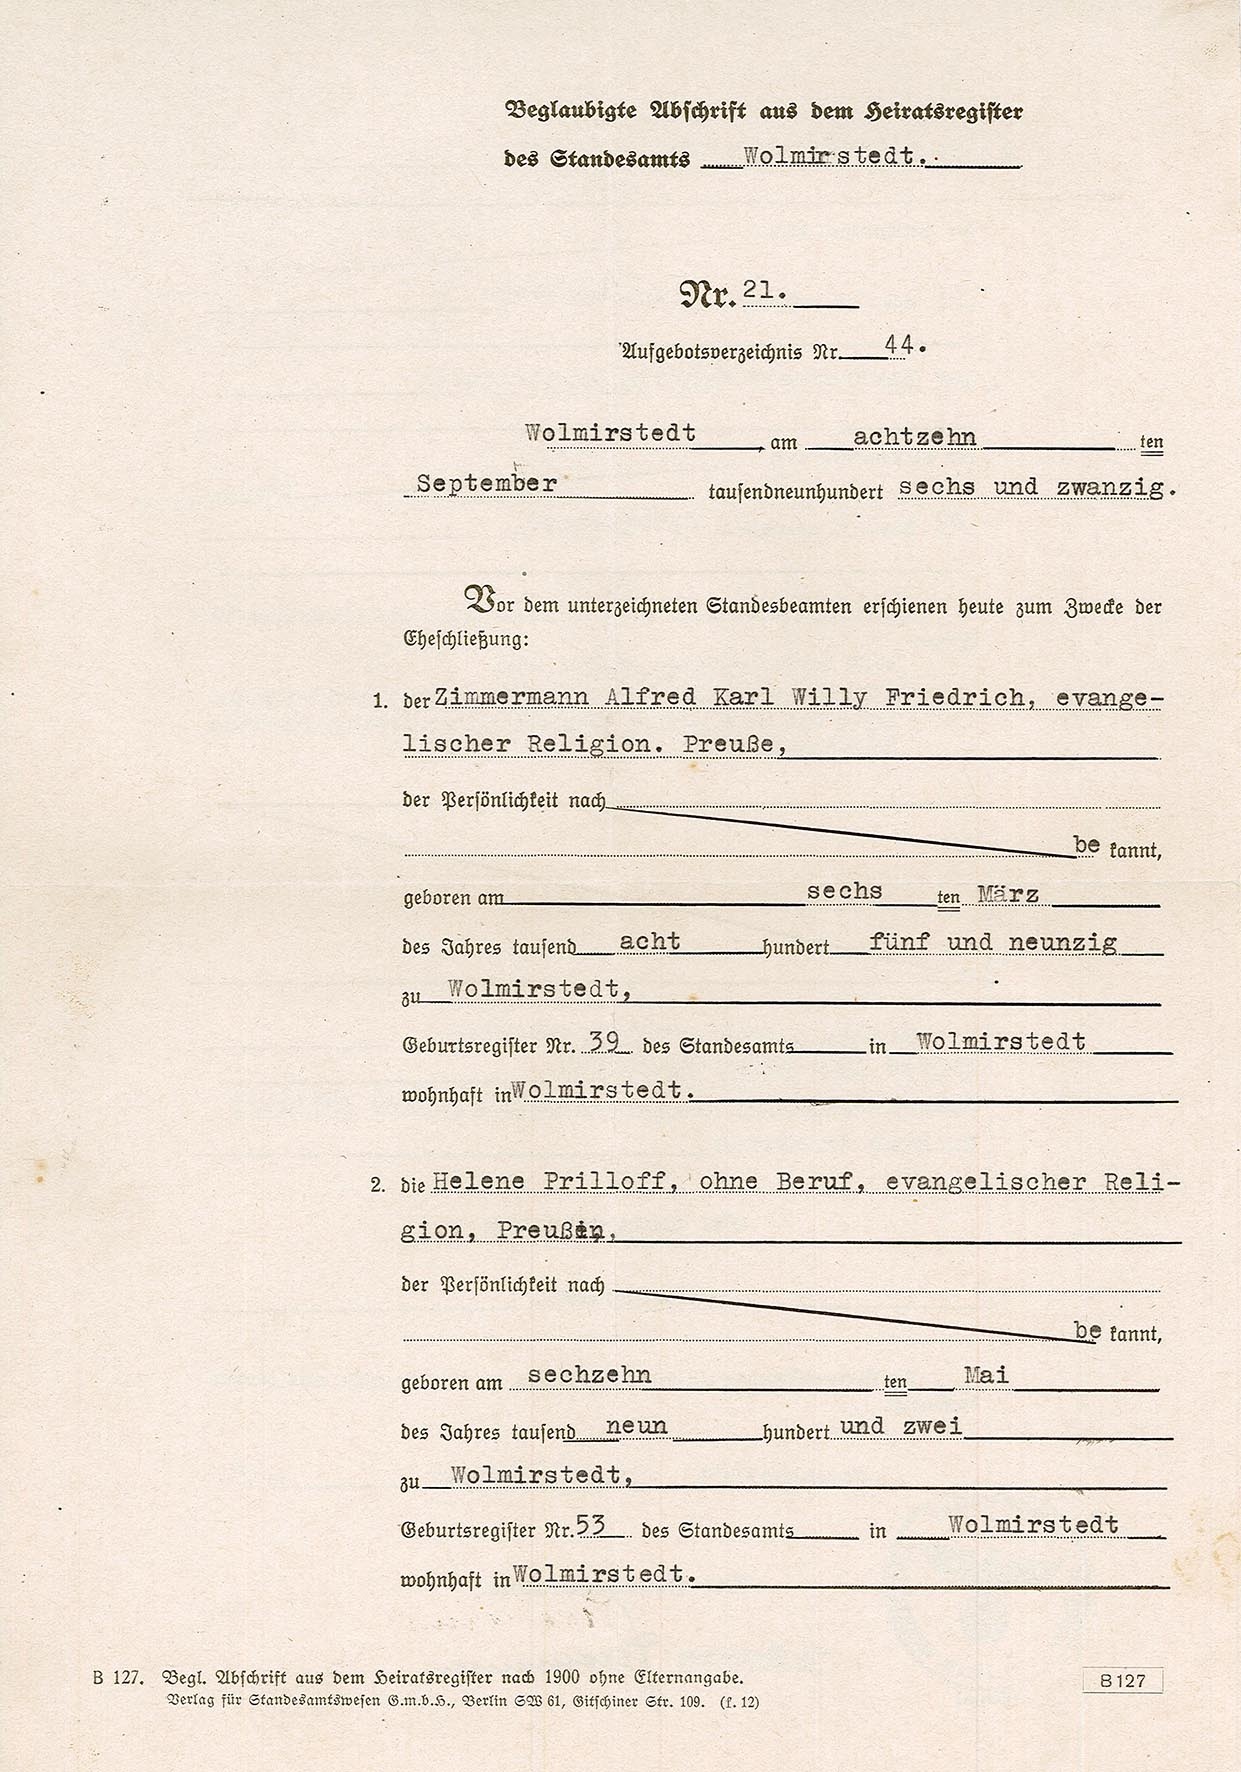 Beglaubigte Abschrift Heiratsregister für Alfred Karl Willy Friedrich und Helene Prilloff , 26. Januar 1943 (Museum Wolmirstedt RR-F)